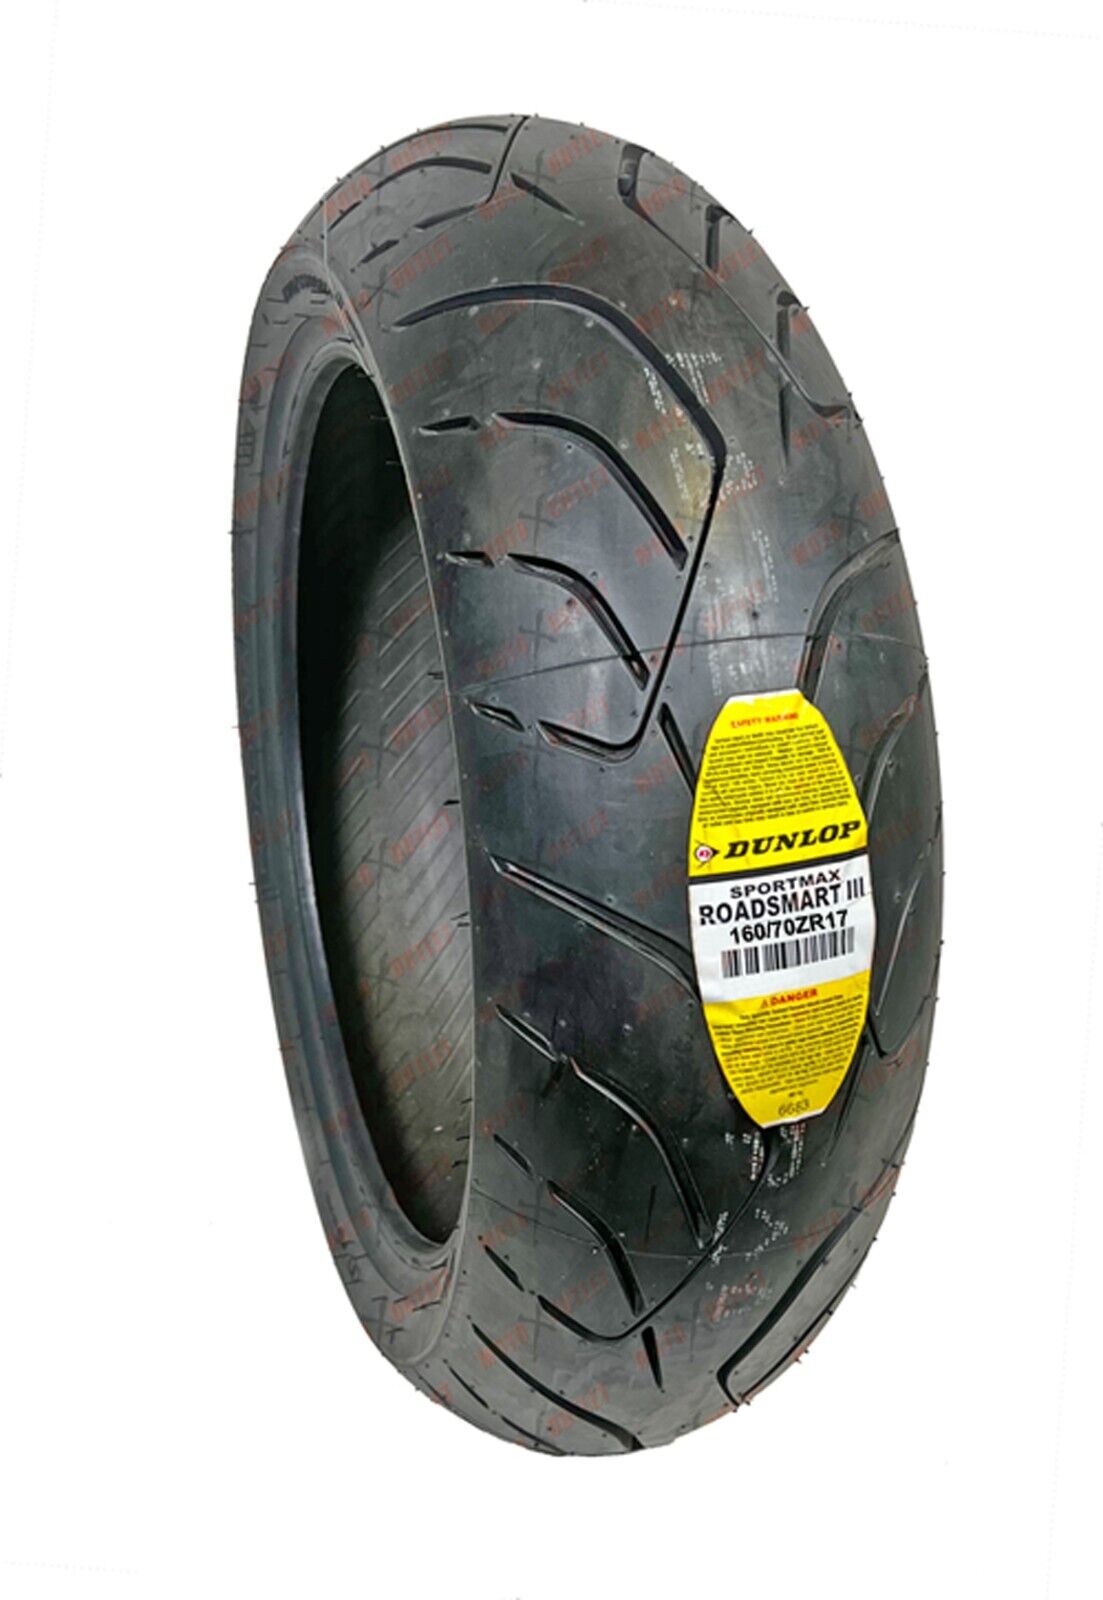 Dunlop Roadsmart 3 160/70ZR17 Rear Motorcycle Tire 3 160 70 17 III 45227405